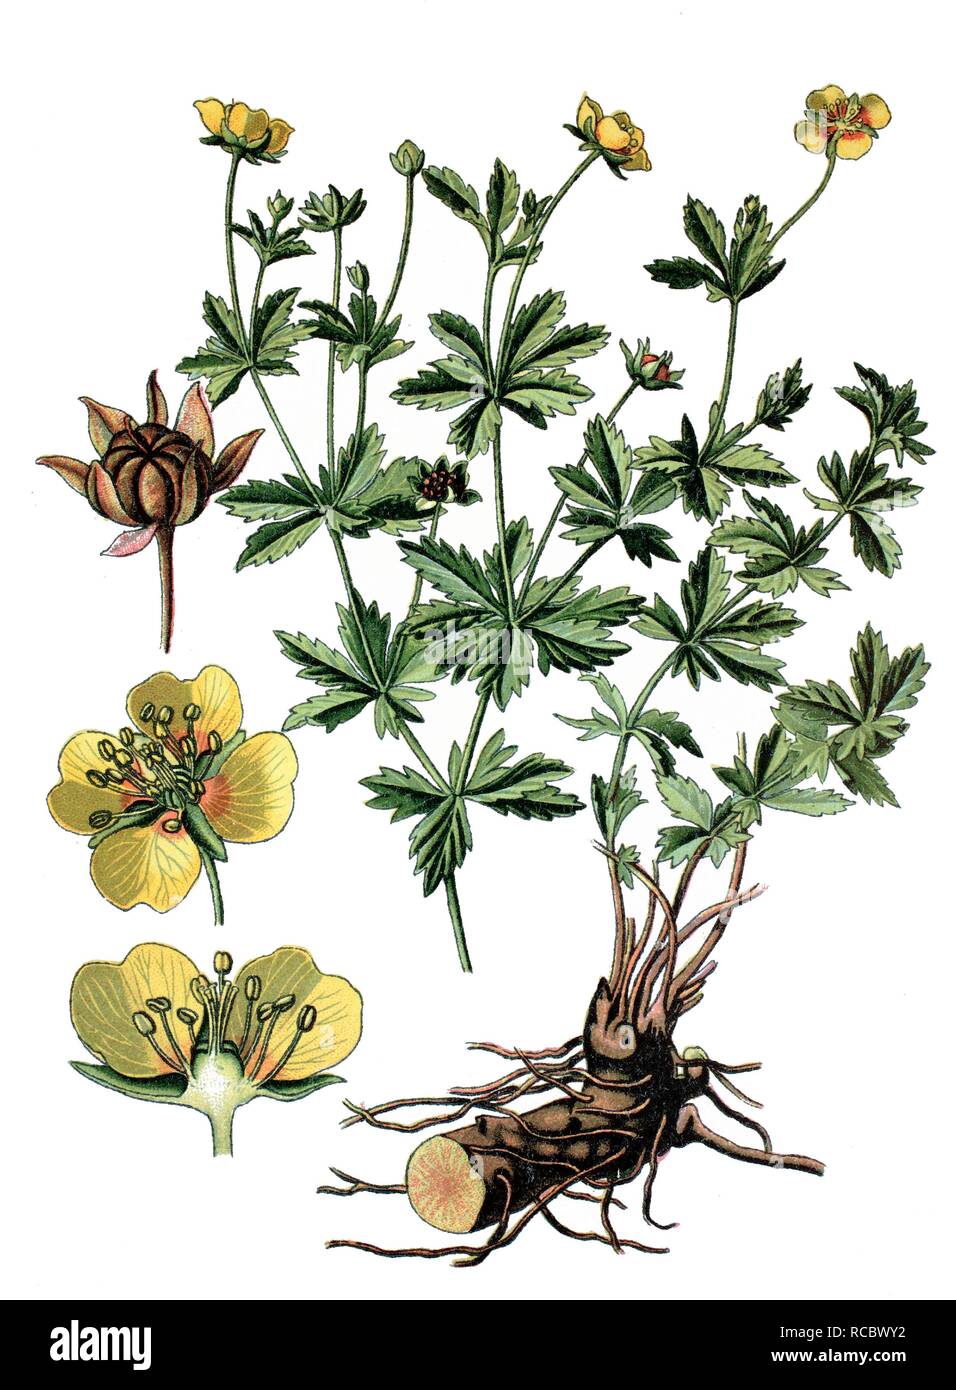 Common Tormentil (Potentilla tormentilla), a medicinal plant, historical chromolithography, ca. 1870 Stock Photo